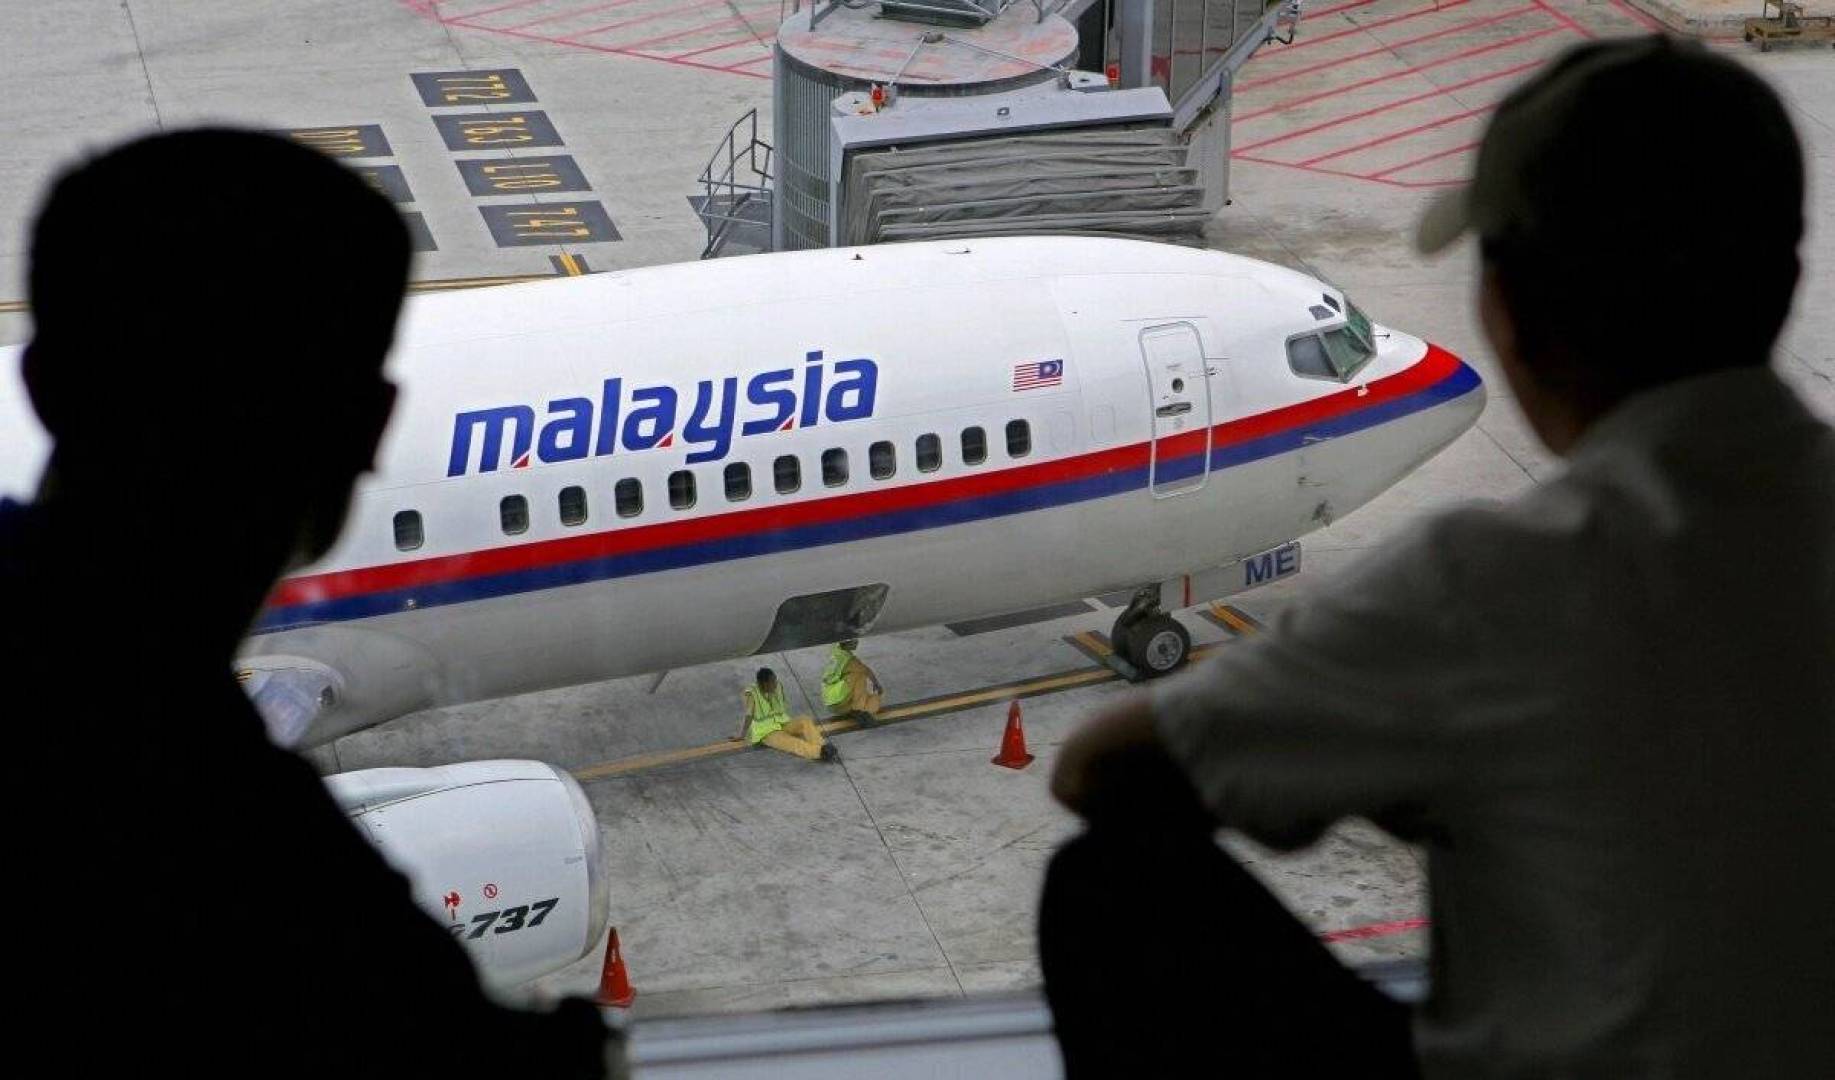 ماذا حدث لطائرة الركاب الماليزية؟ وأين سقطت؟